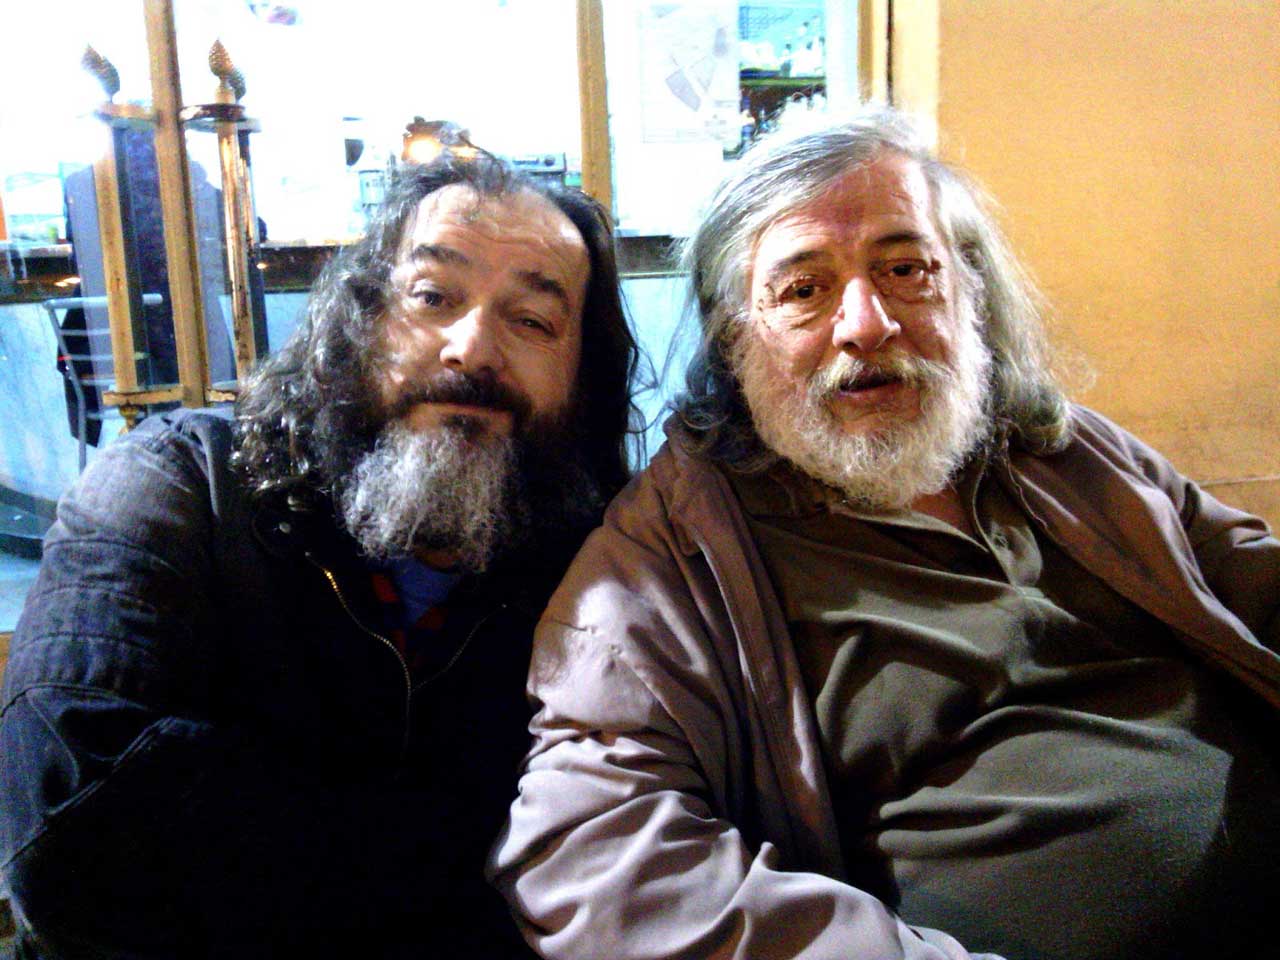 MacDiego junto con Micharmut. Fotografía perteneciente al blog de Joan Navarro Badía. http://navarrobadia.blogspot.com.es